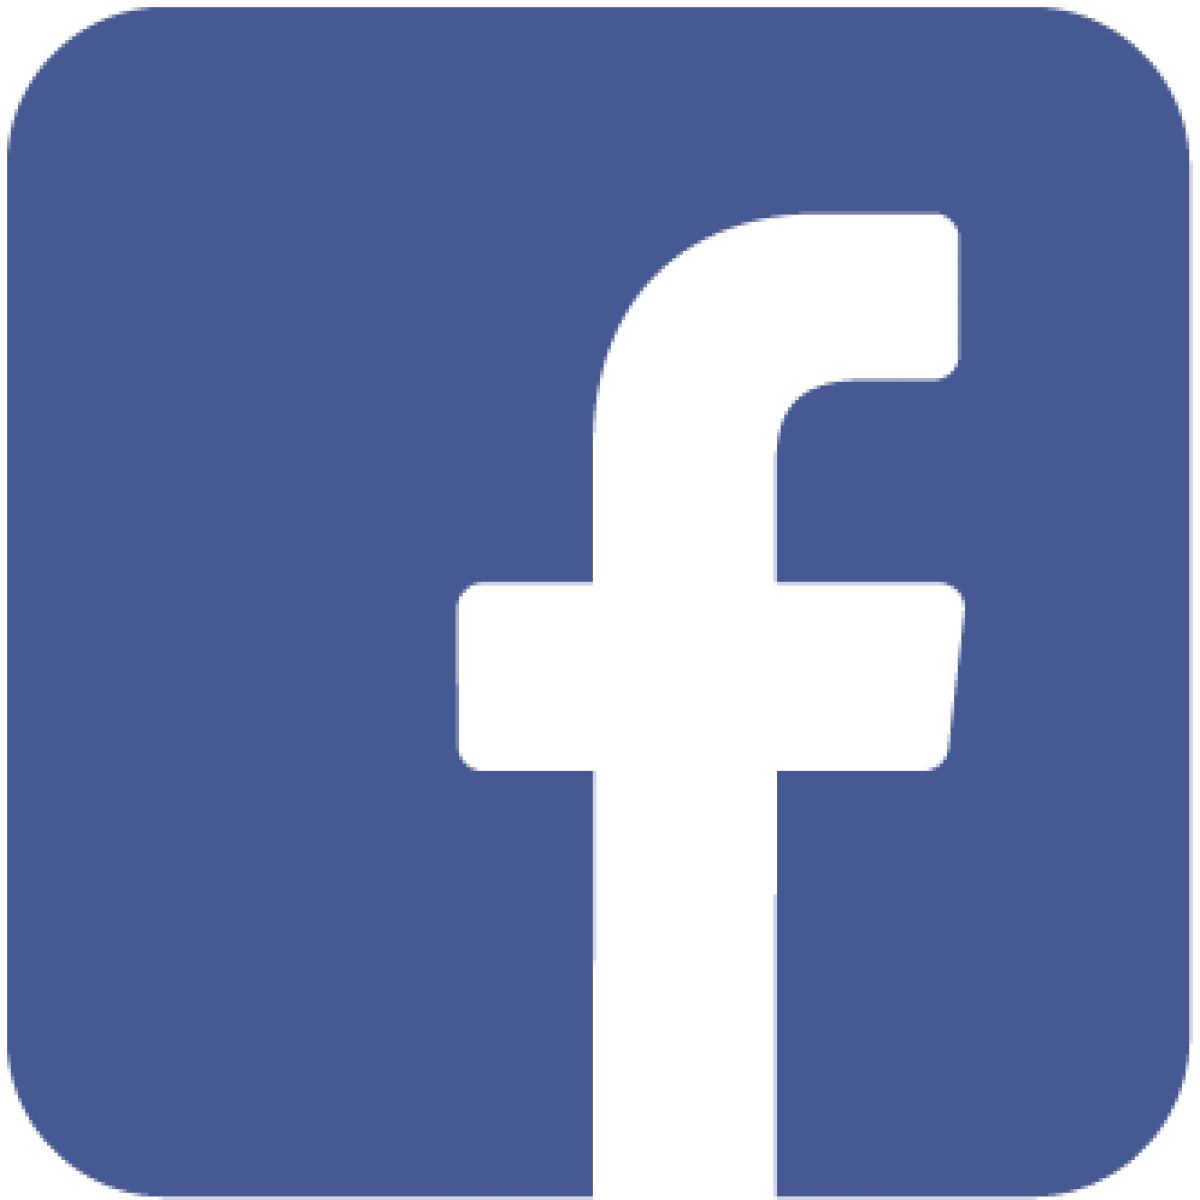 Suivez nous sur Facebook